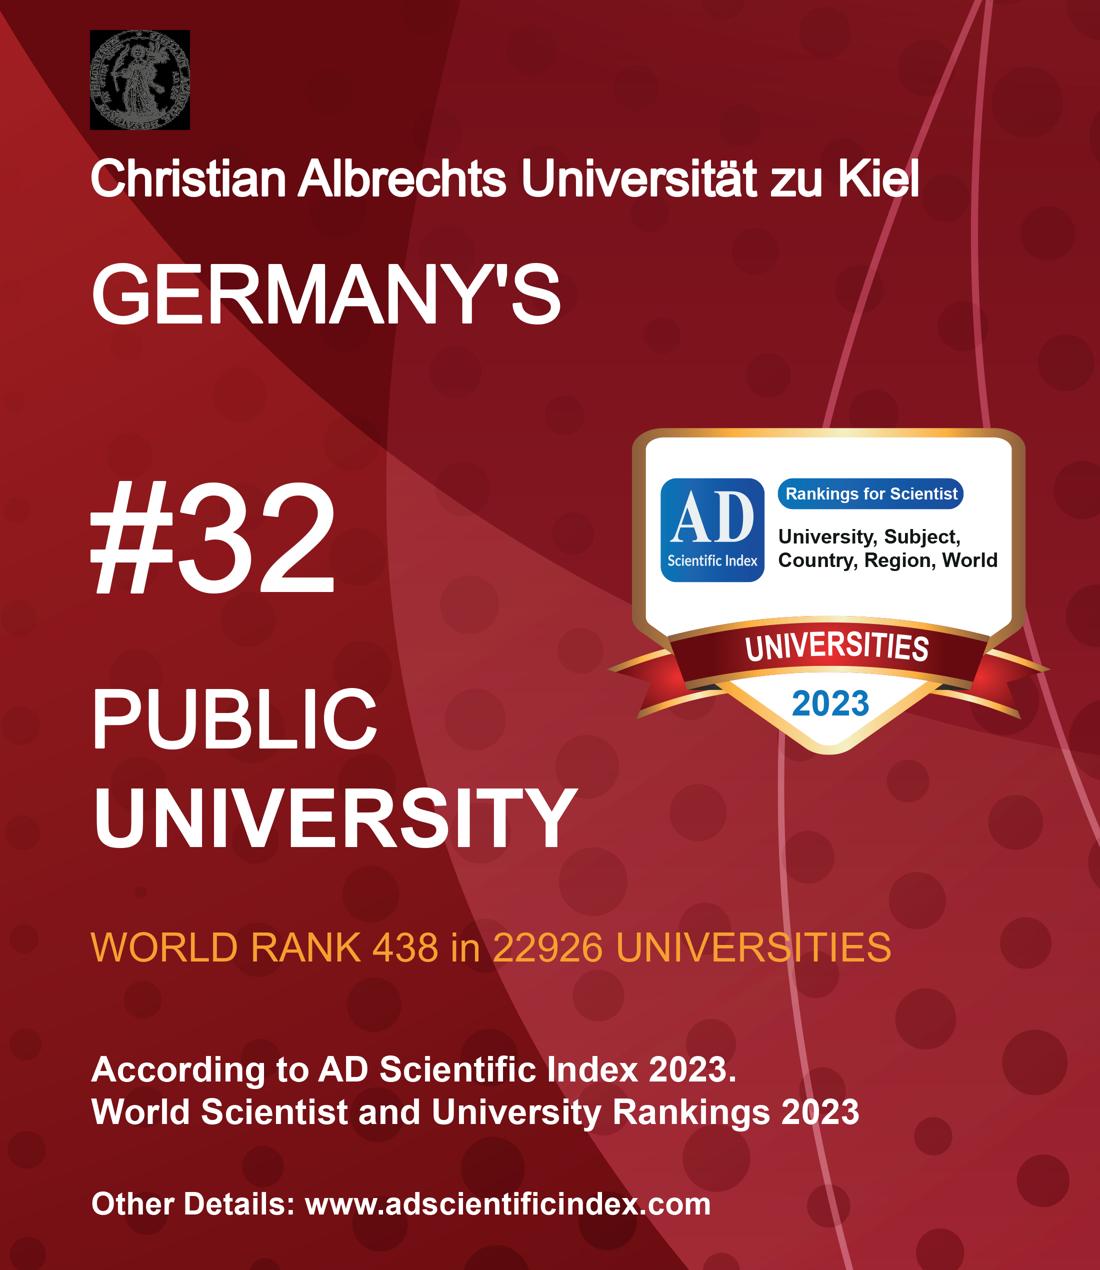 Christian Albrechts Universität zu Kiel